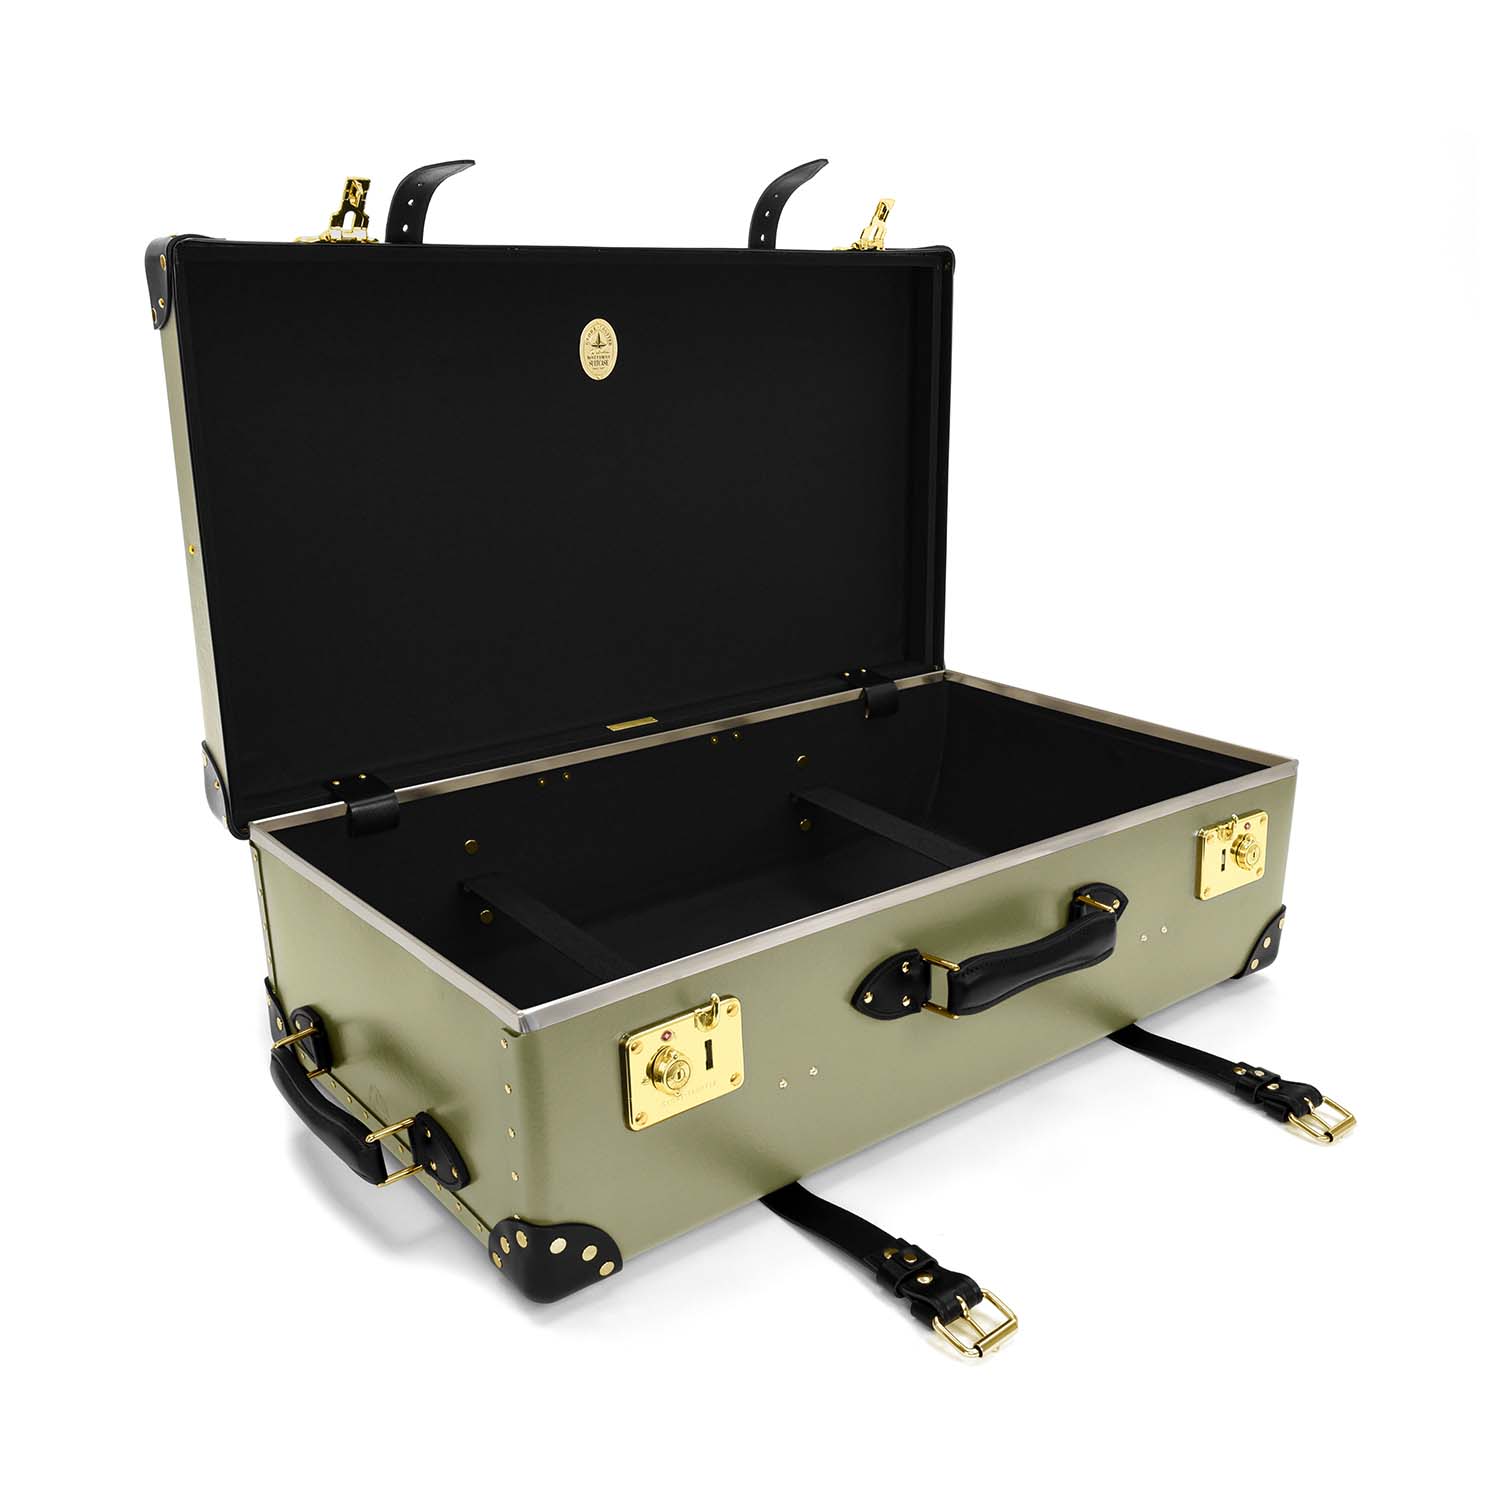 Centenary · Large Suitcase - 2 Wheels | Olive/Black/Gold